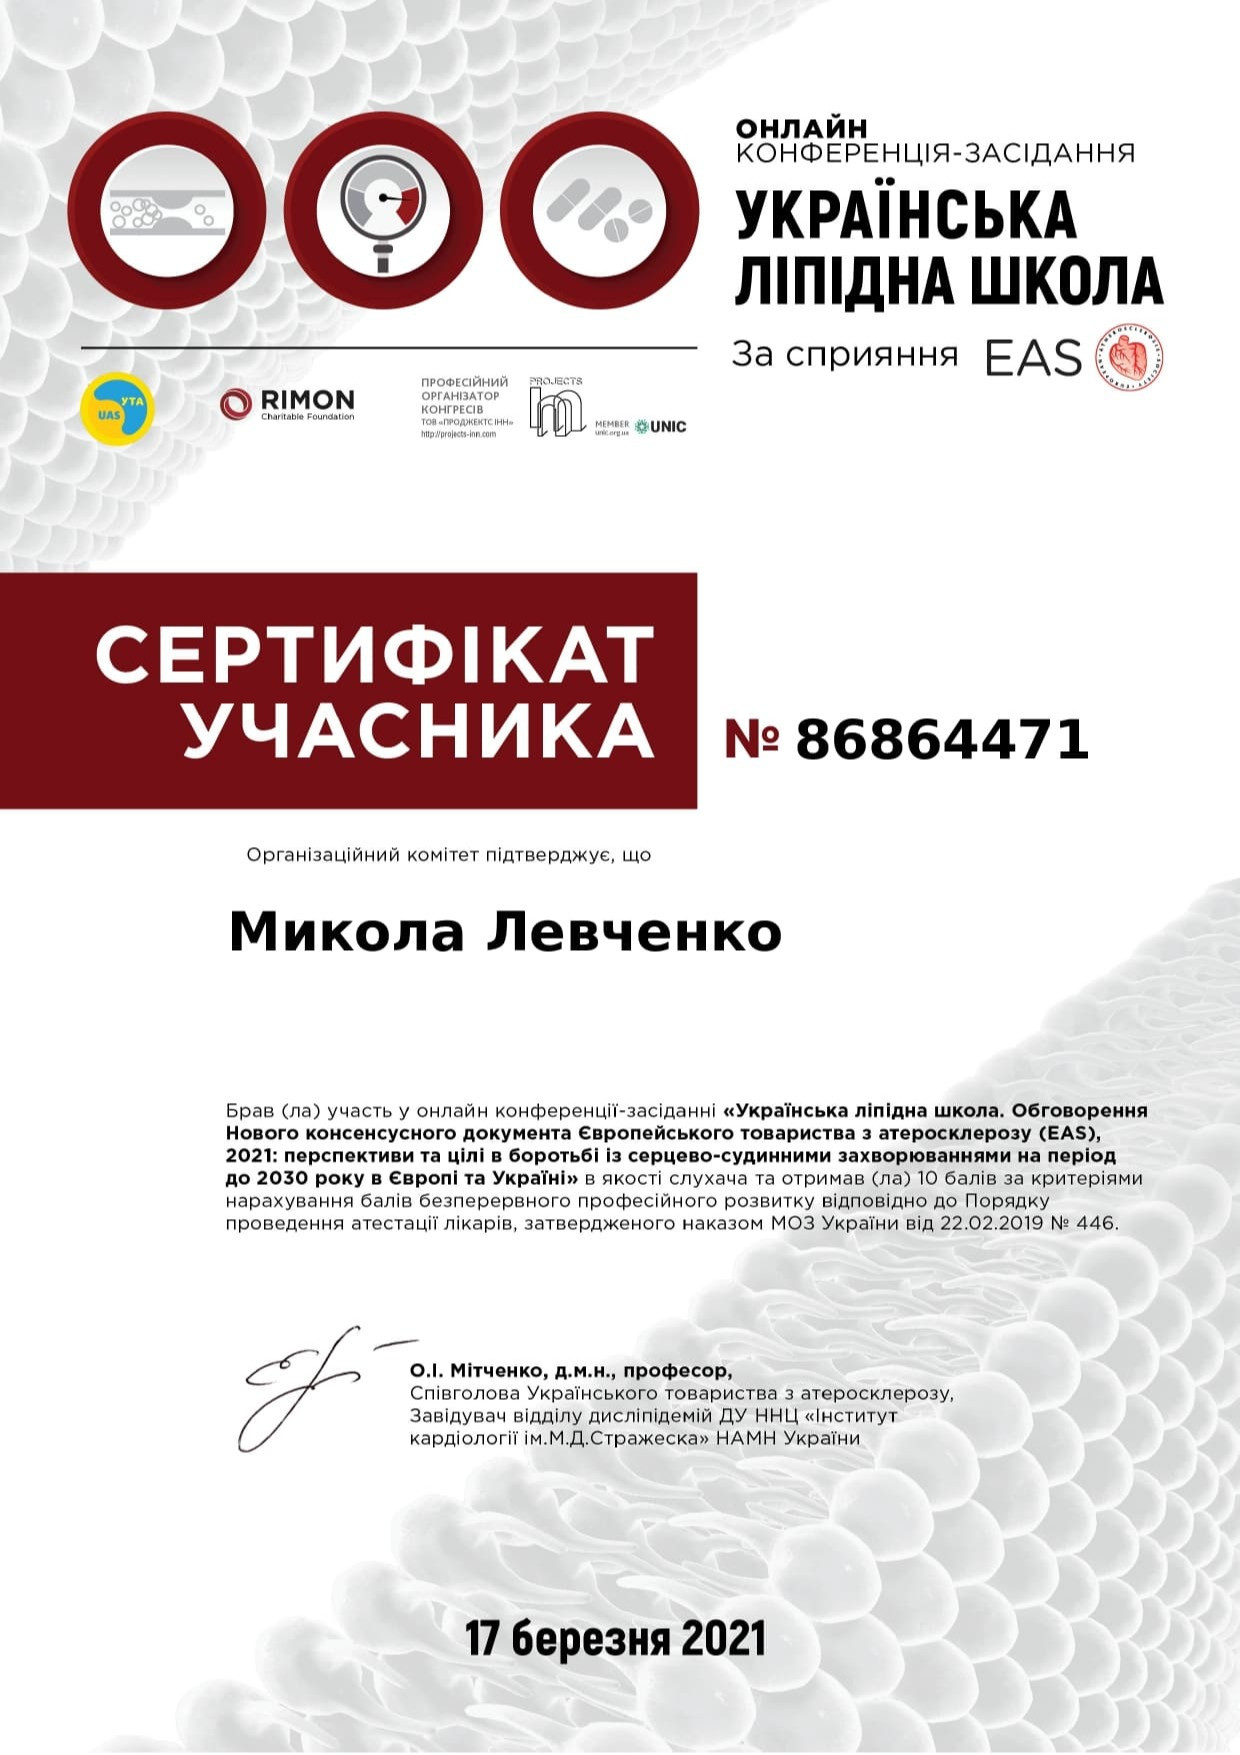 Сертификат об участии в онлайн конференции